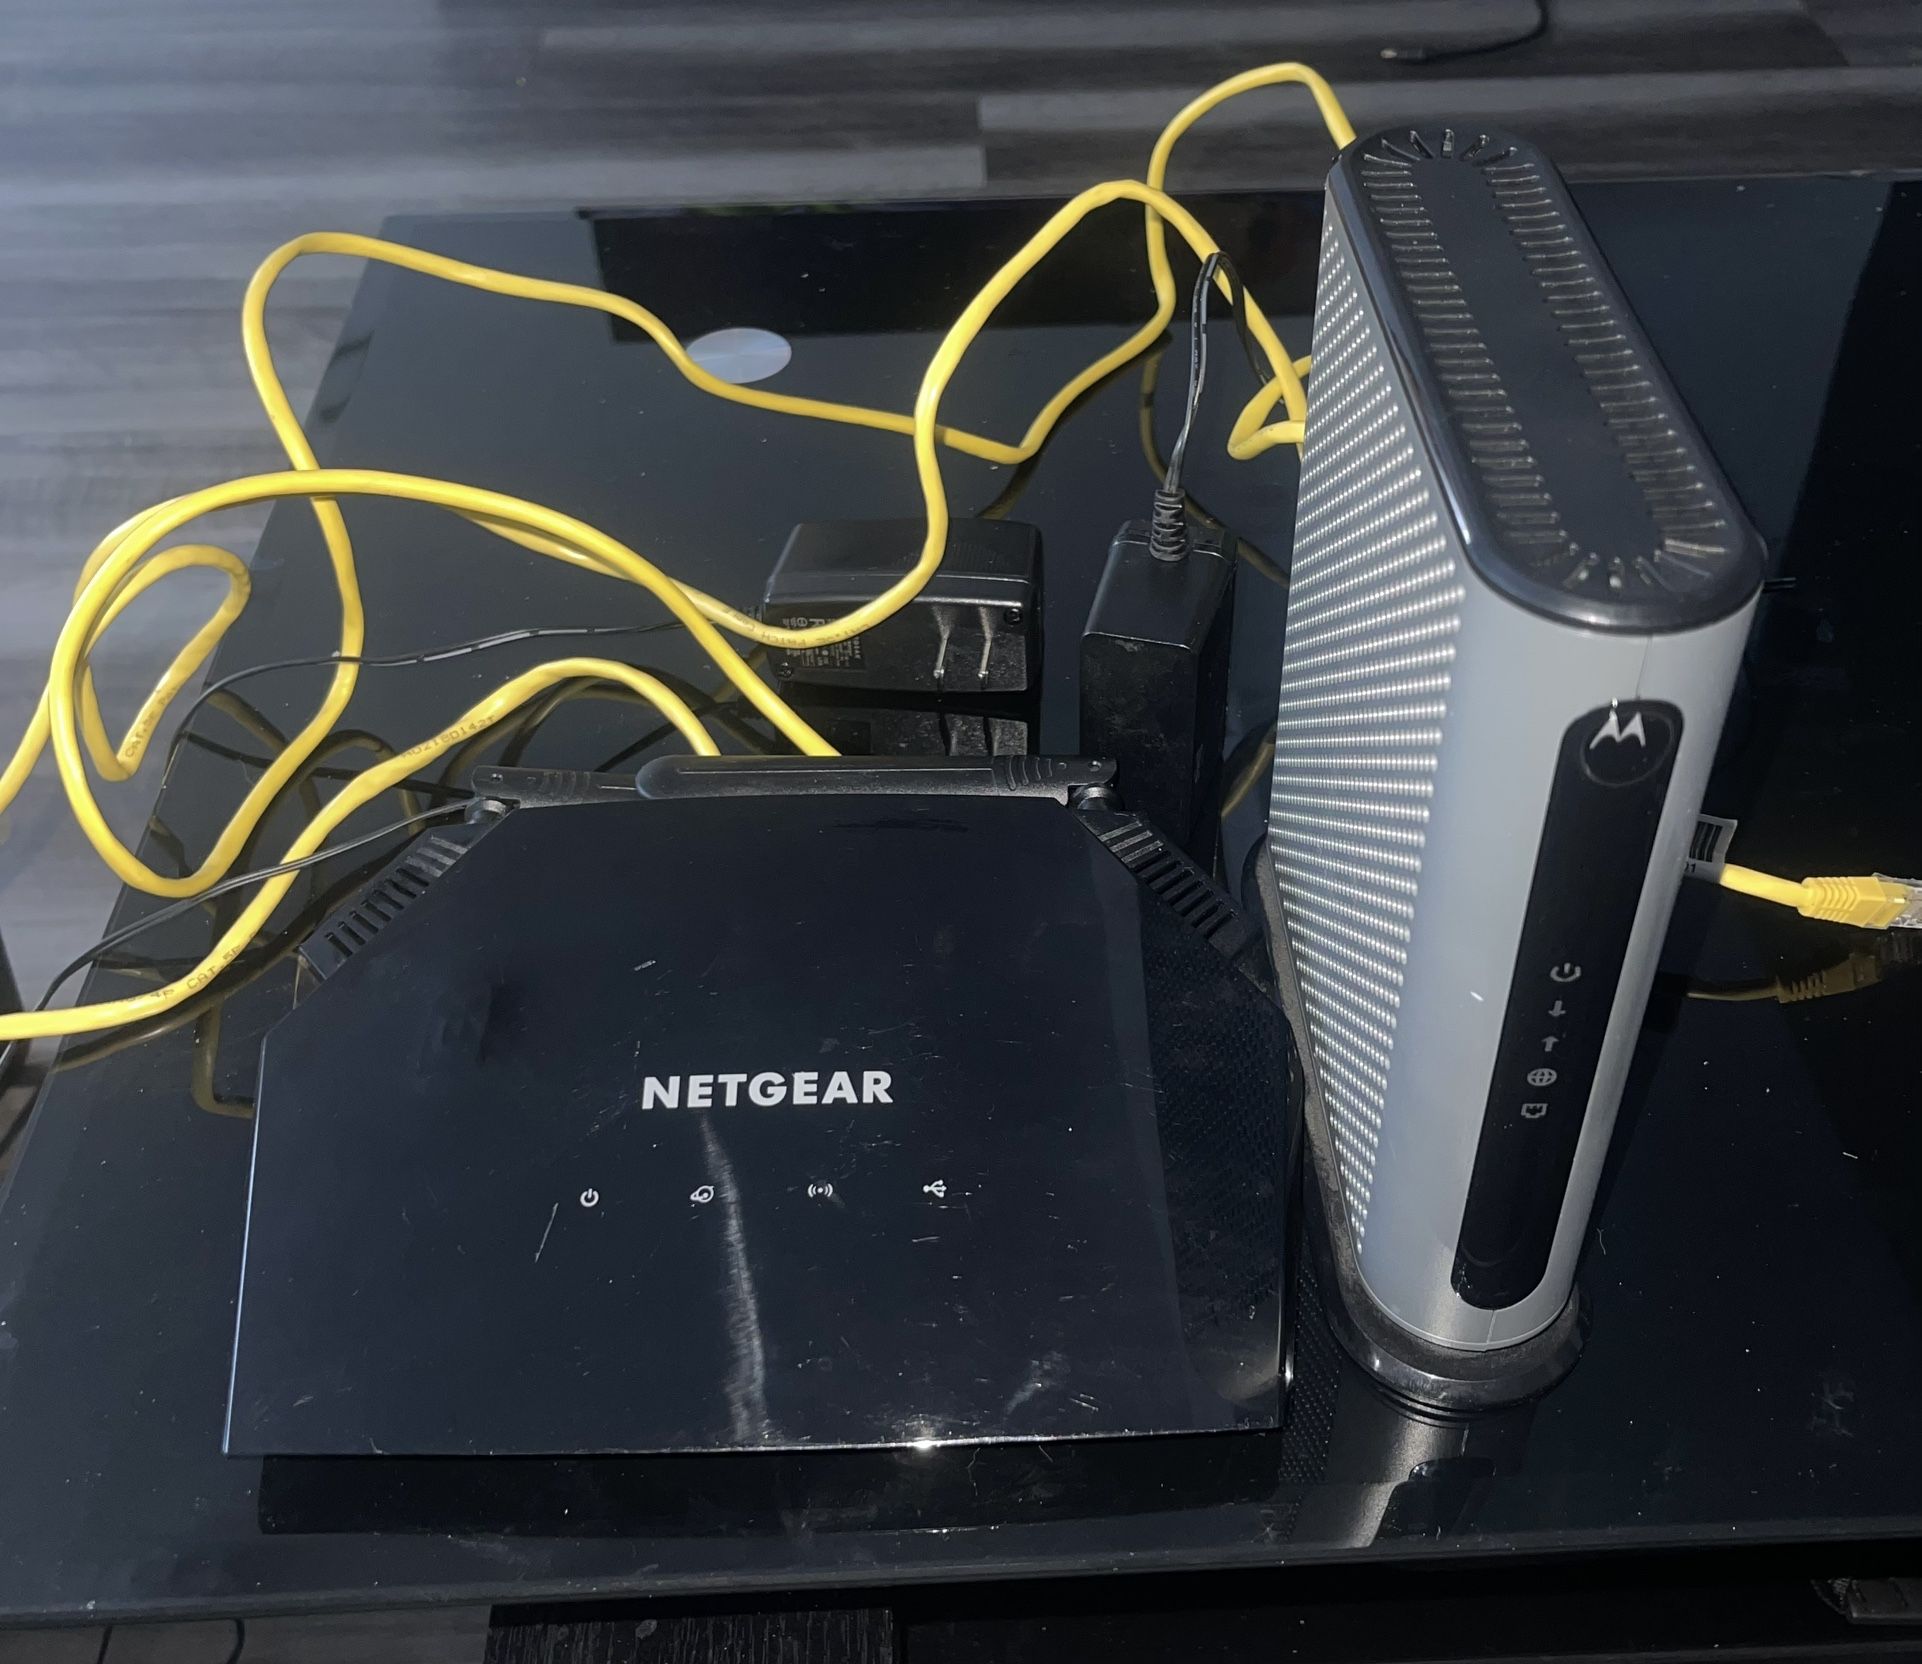 Netgear router and motorola Modem